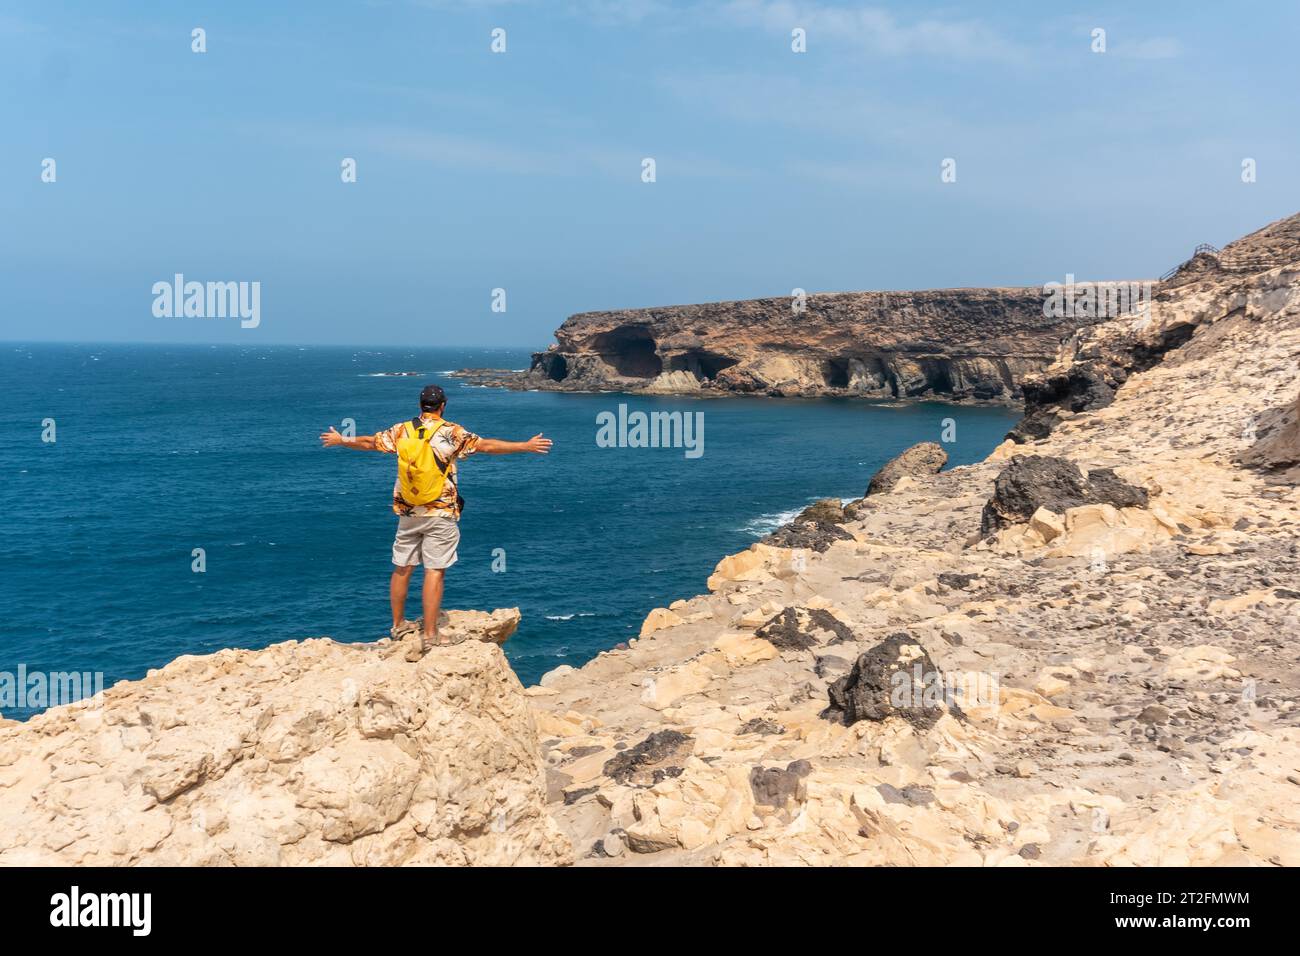 Ein junger Tourist auf dem Weg zu den Höhlen von Ajuy, Pajara, Westküste der Insel Fuerteventura, Kanarischen Inseln. Spanien Stockfoto